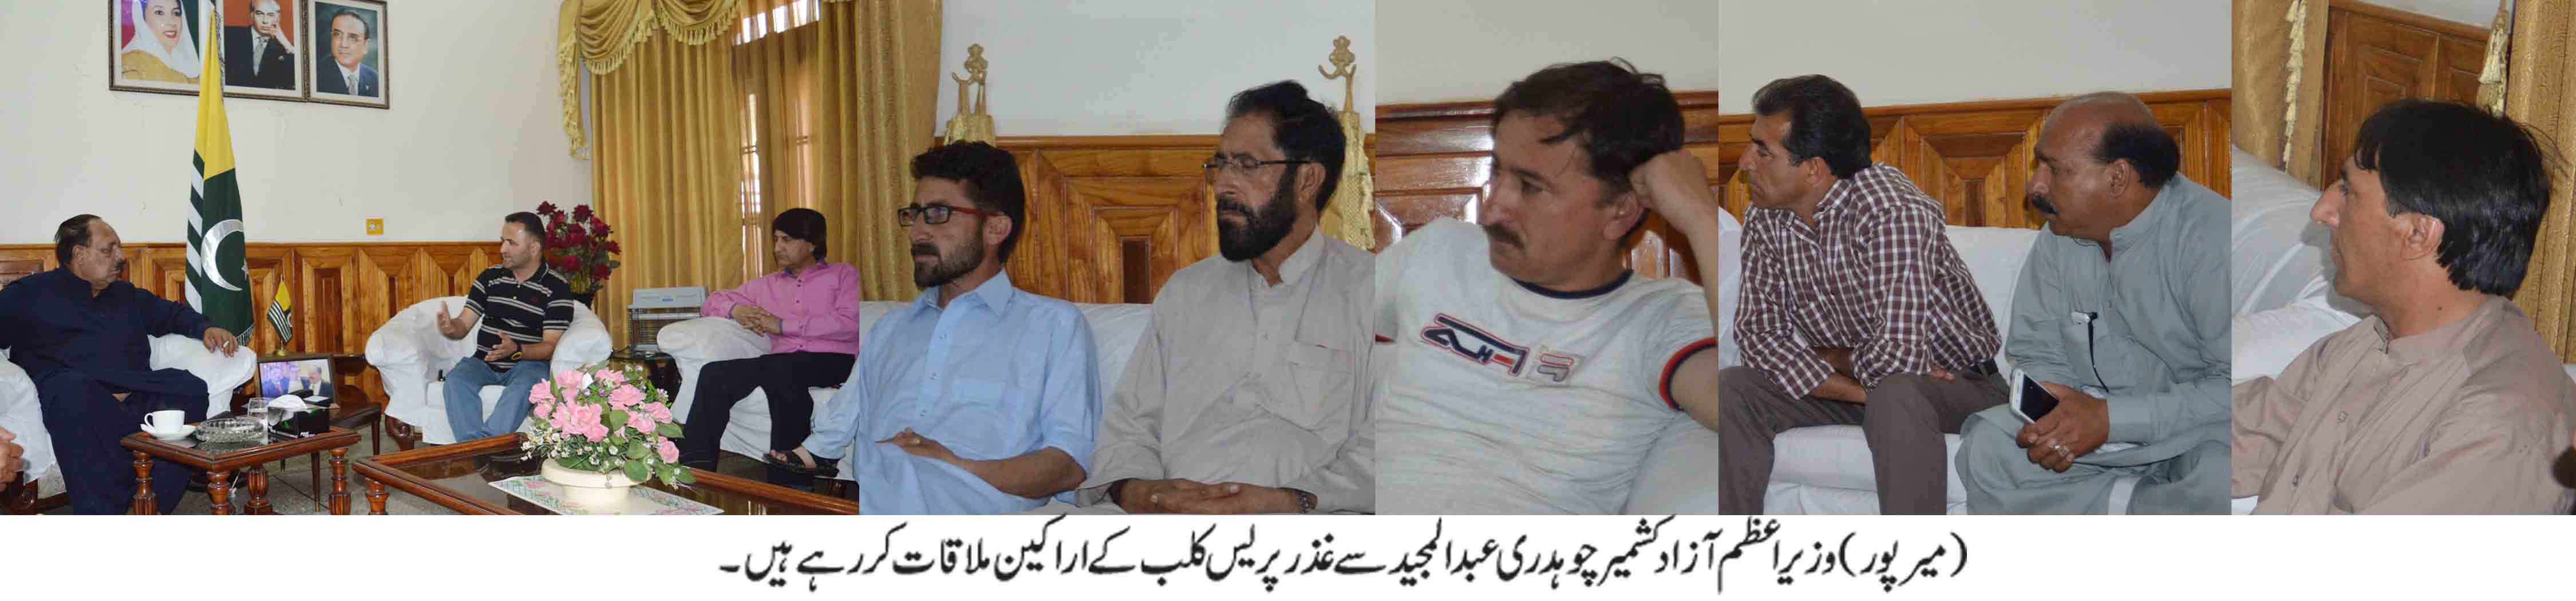 ضلع غذر سے تعلق رکھنے والے صحافیوں کے وفد کی وزیر اعظم آزاد کشمیر سے ملاقات